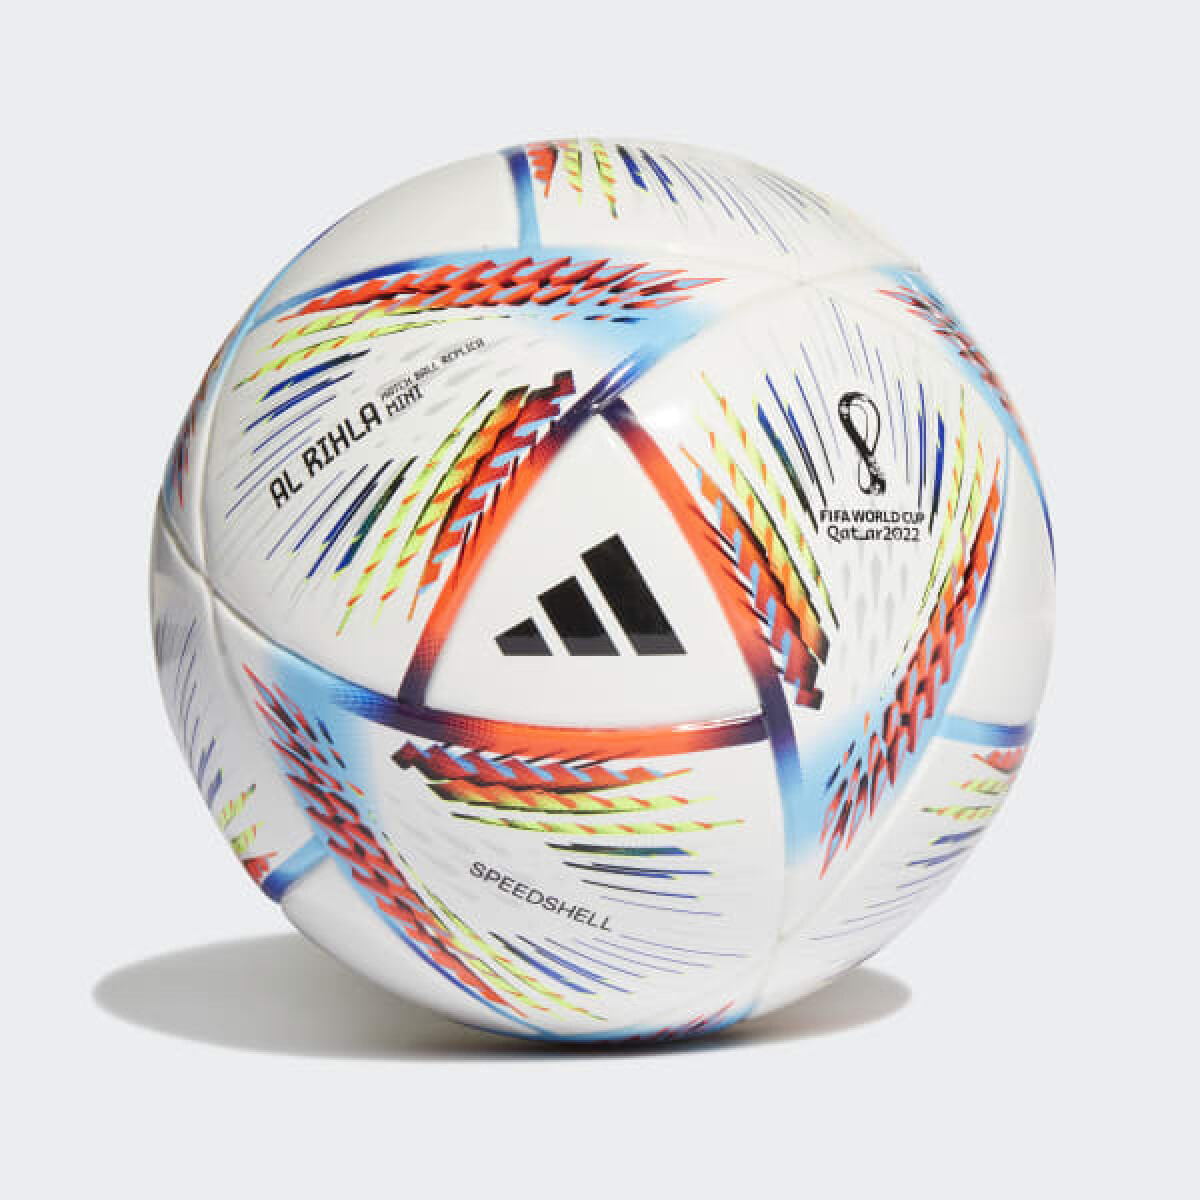 Pelota Adidas Futbol Mini Rihla - Color Único 